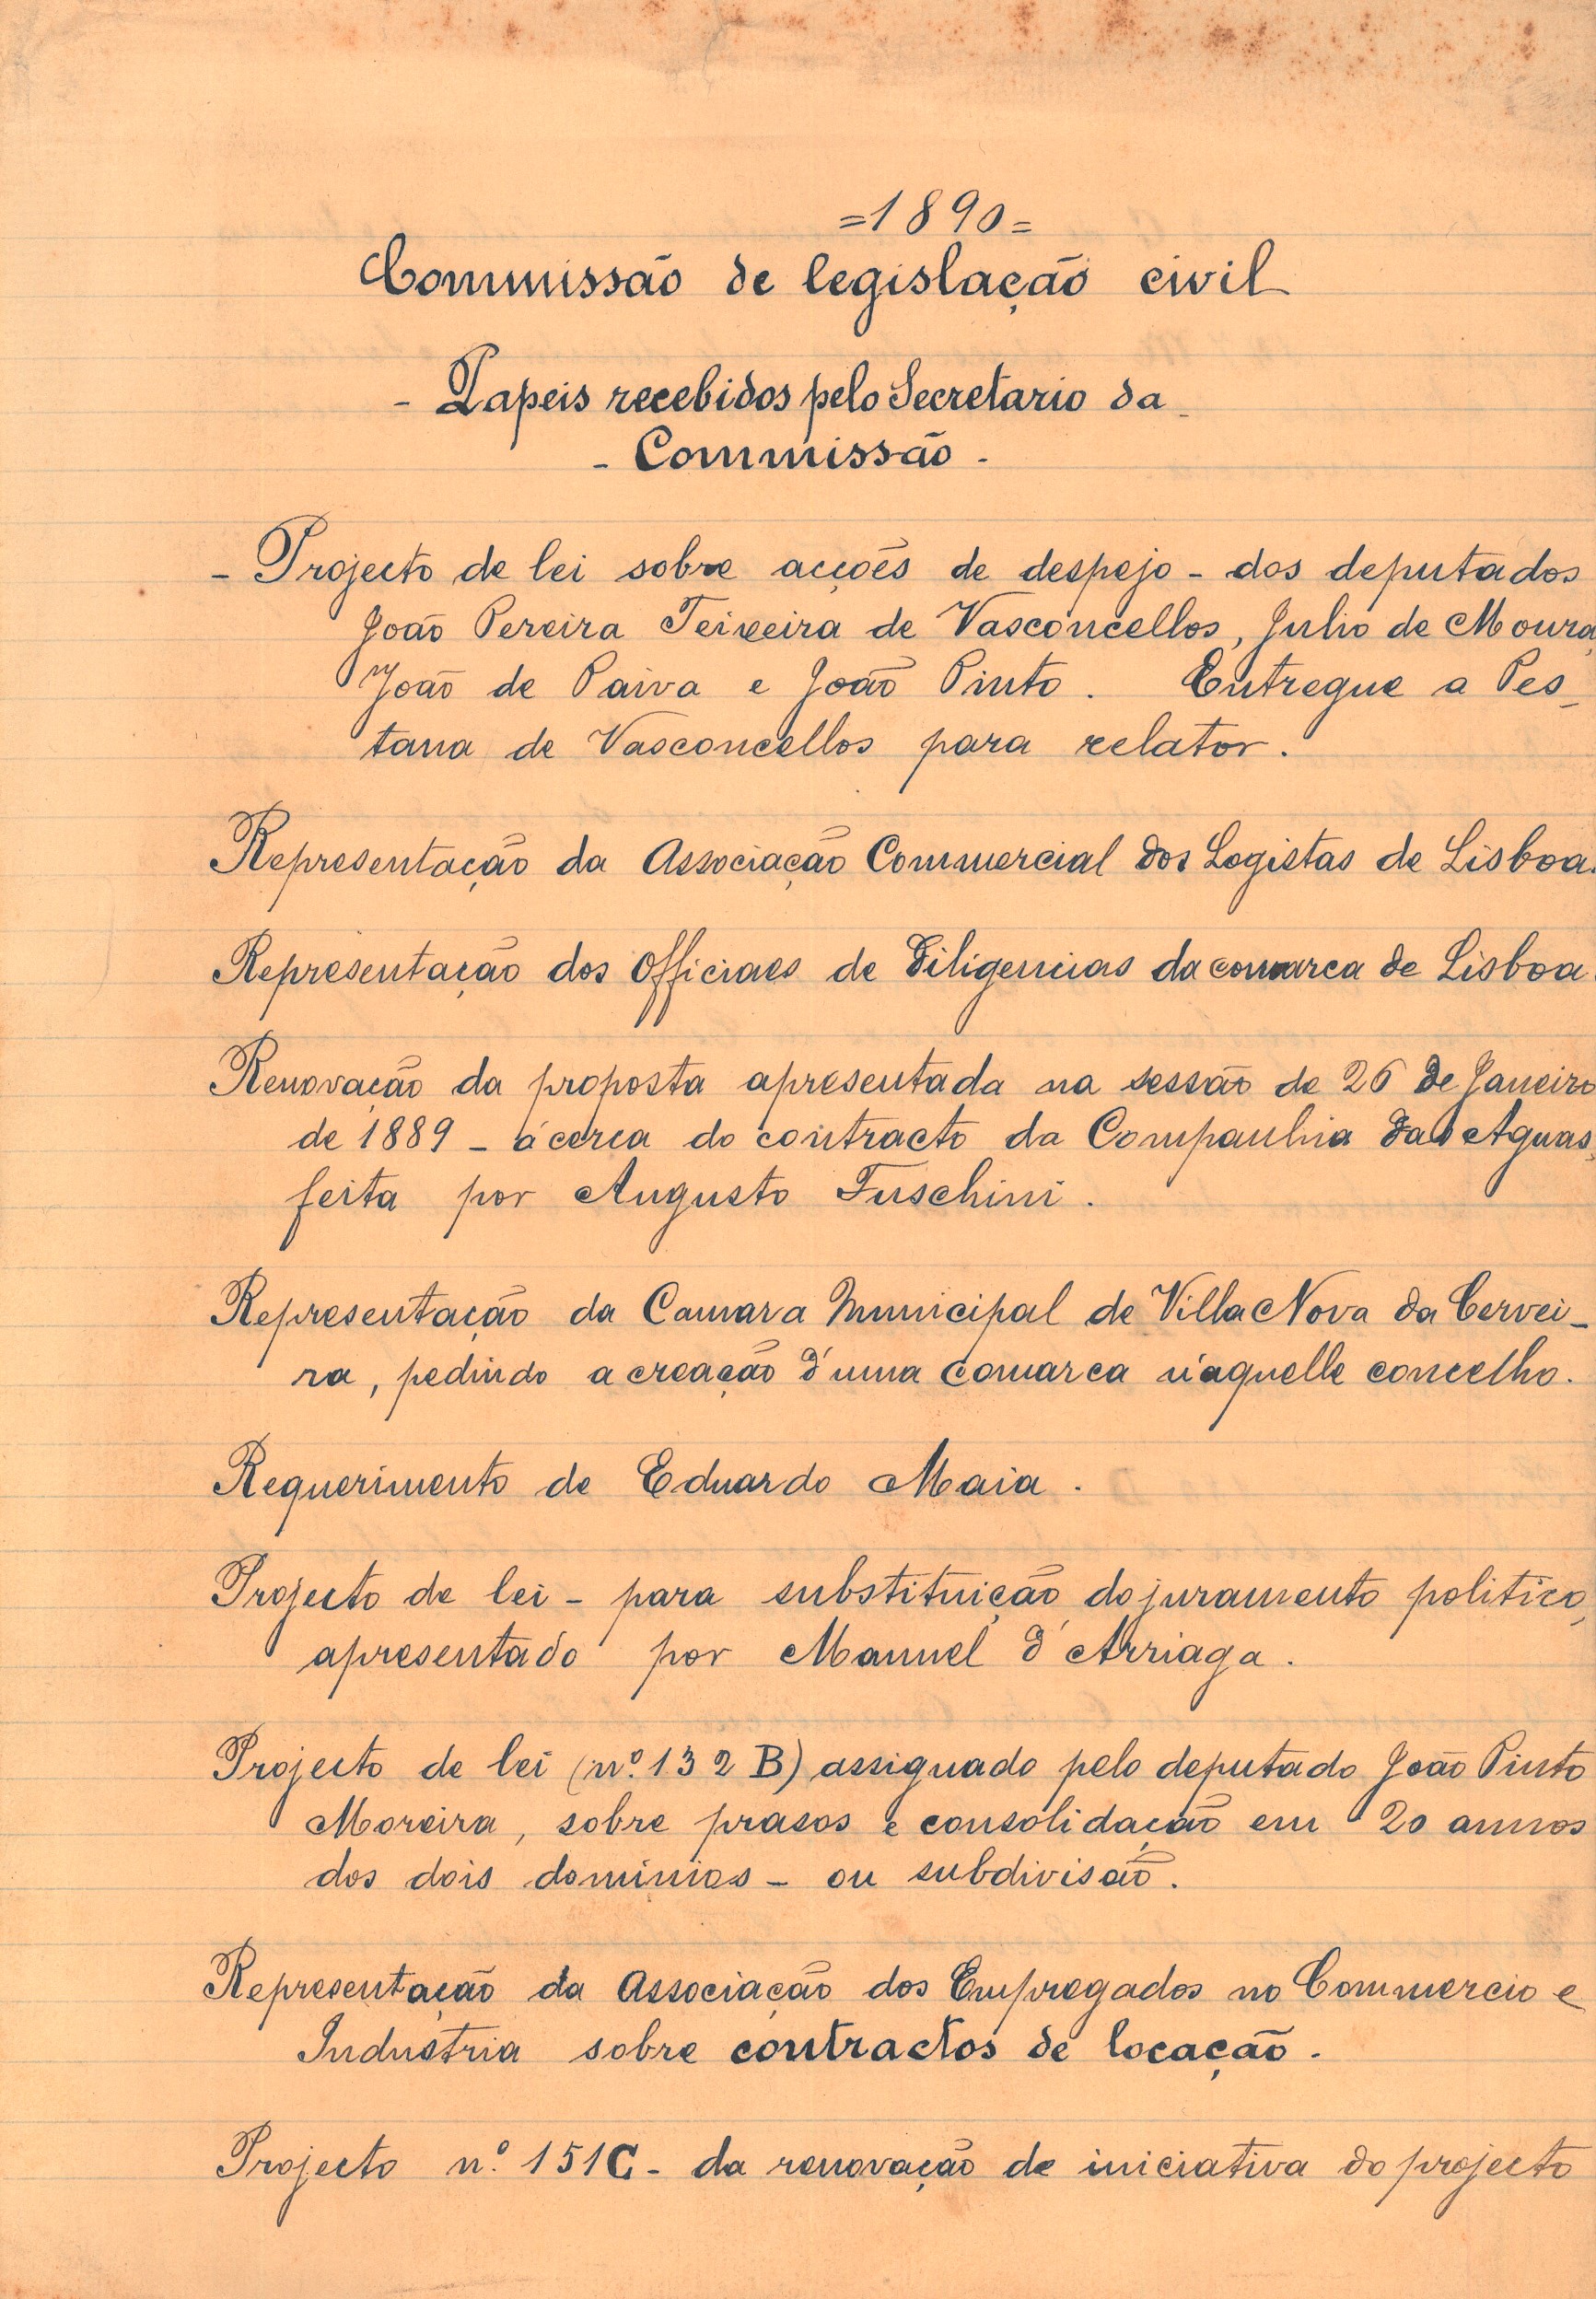 Índice dos papéis recebidos pelo Secretariado da Comissão de Legislação Civil em 1890. Cota AHP: Secção I/II, cx. 656, mç. 583, doc. 38.